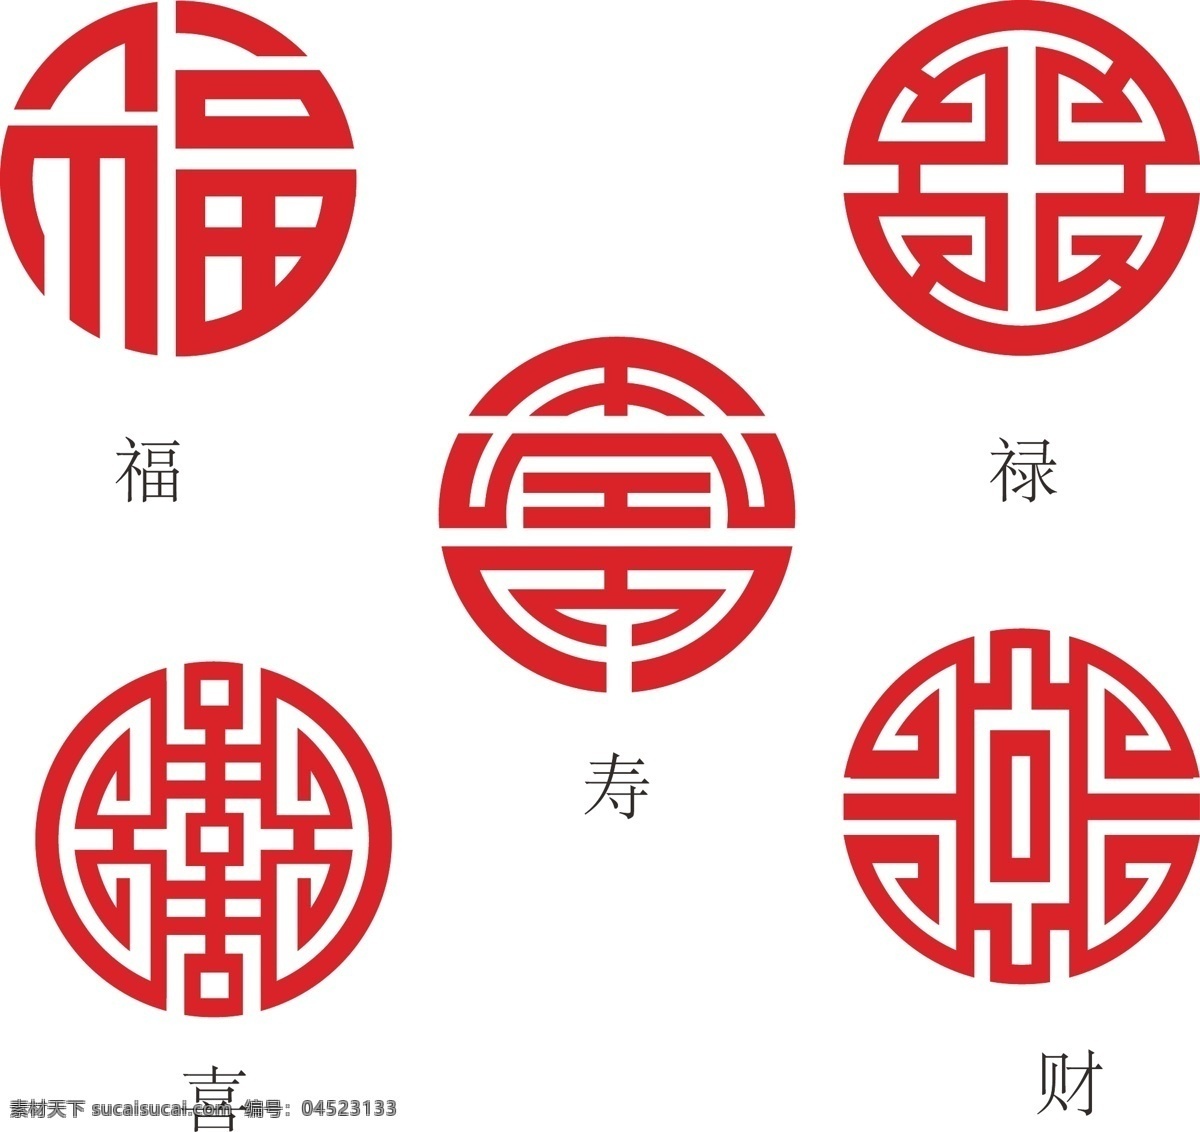 五福 福禄寿喜财 中国 传统 文化 习俗 传统文化 文化艺术 矢量